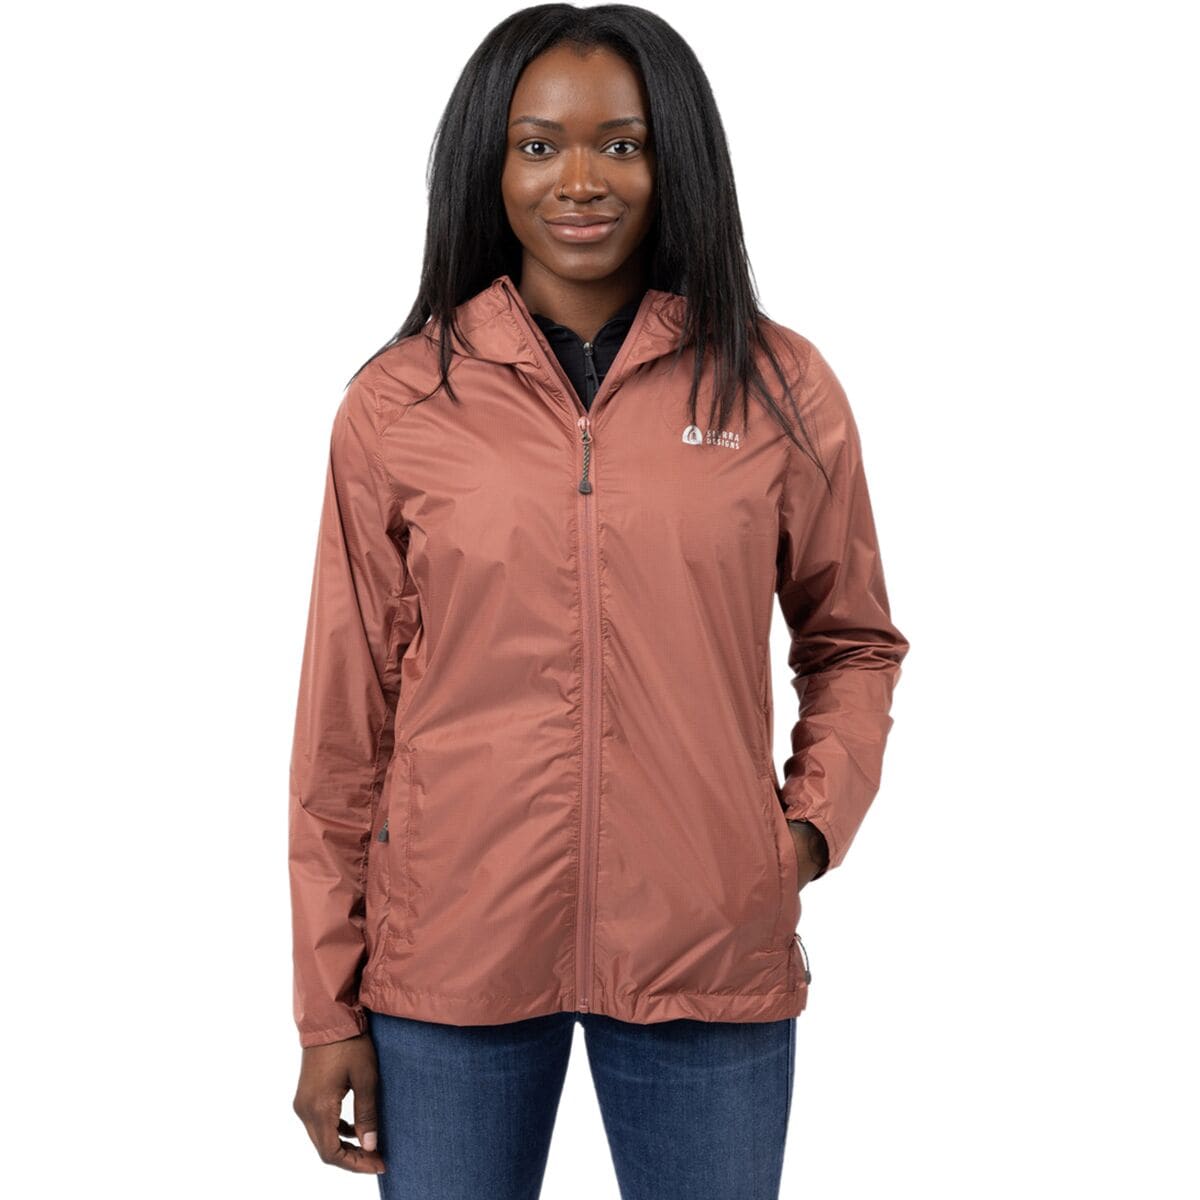 Sierra Designs Microlight 2.0 Rain Jacket - Women's